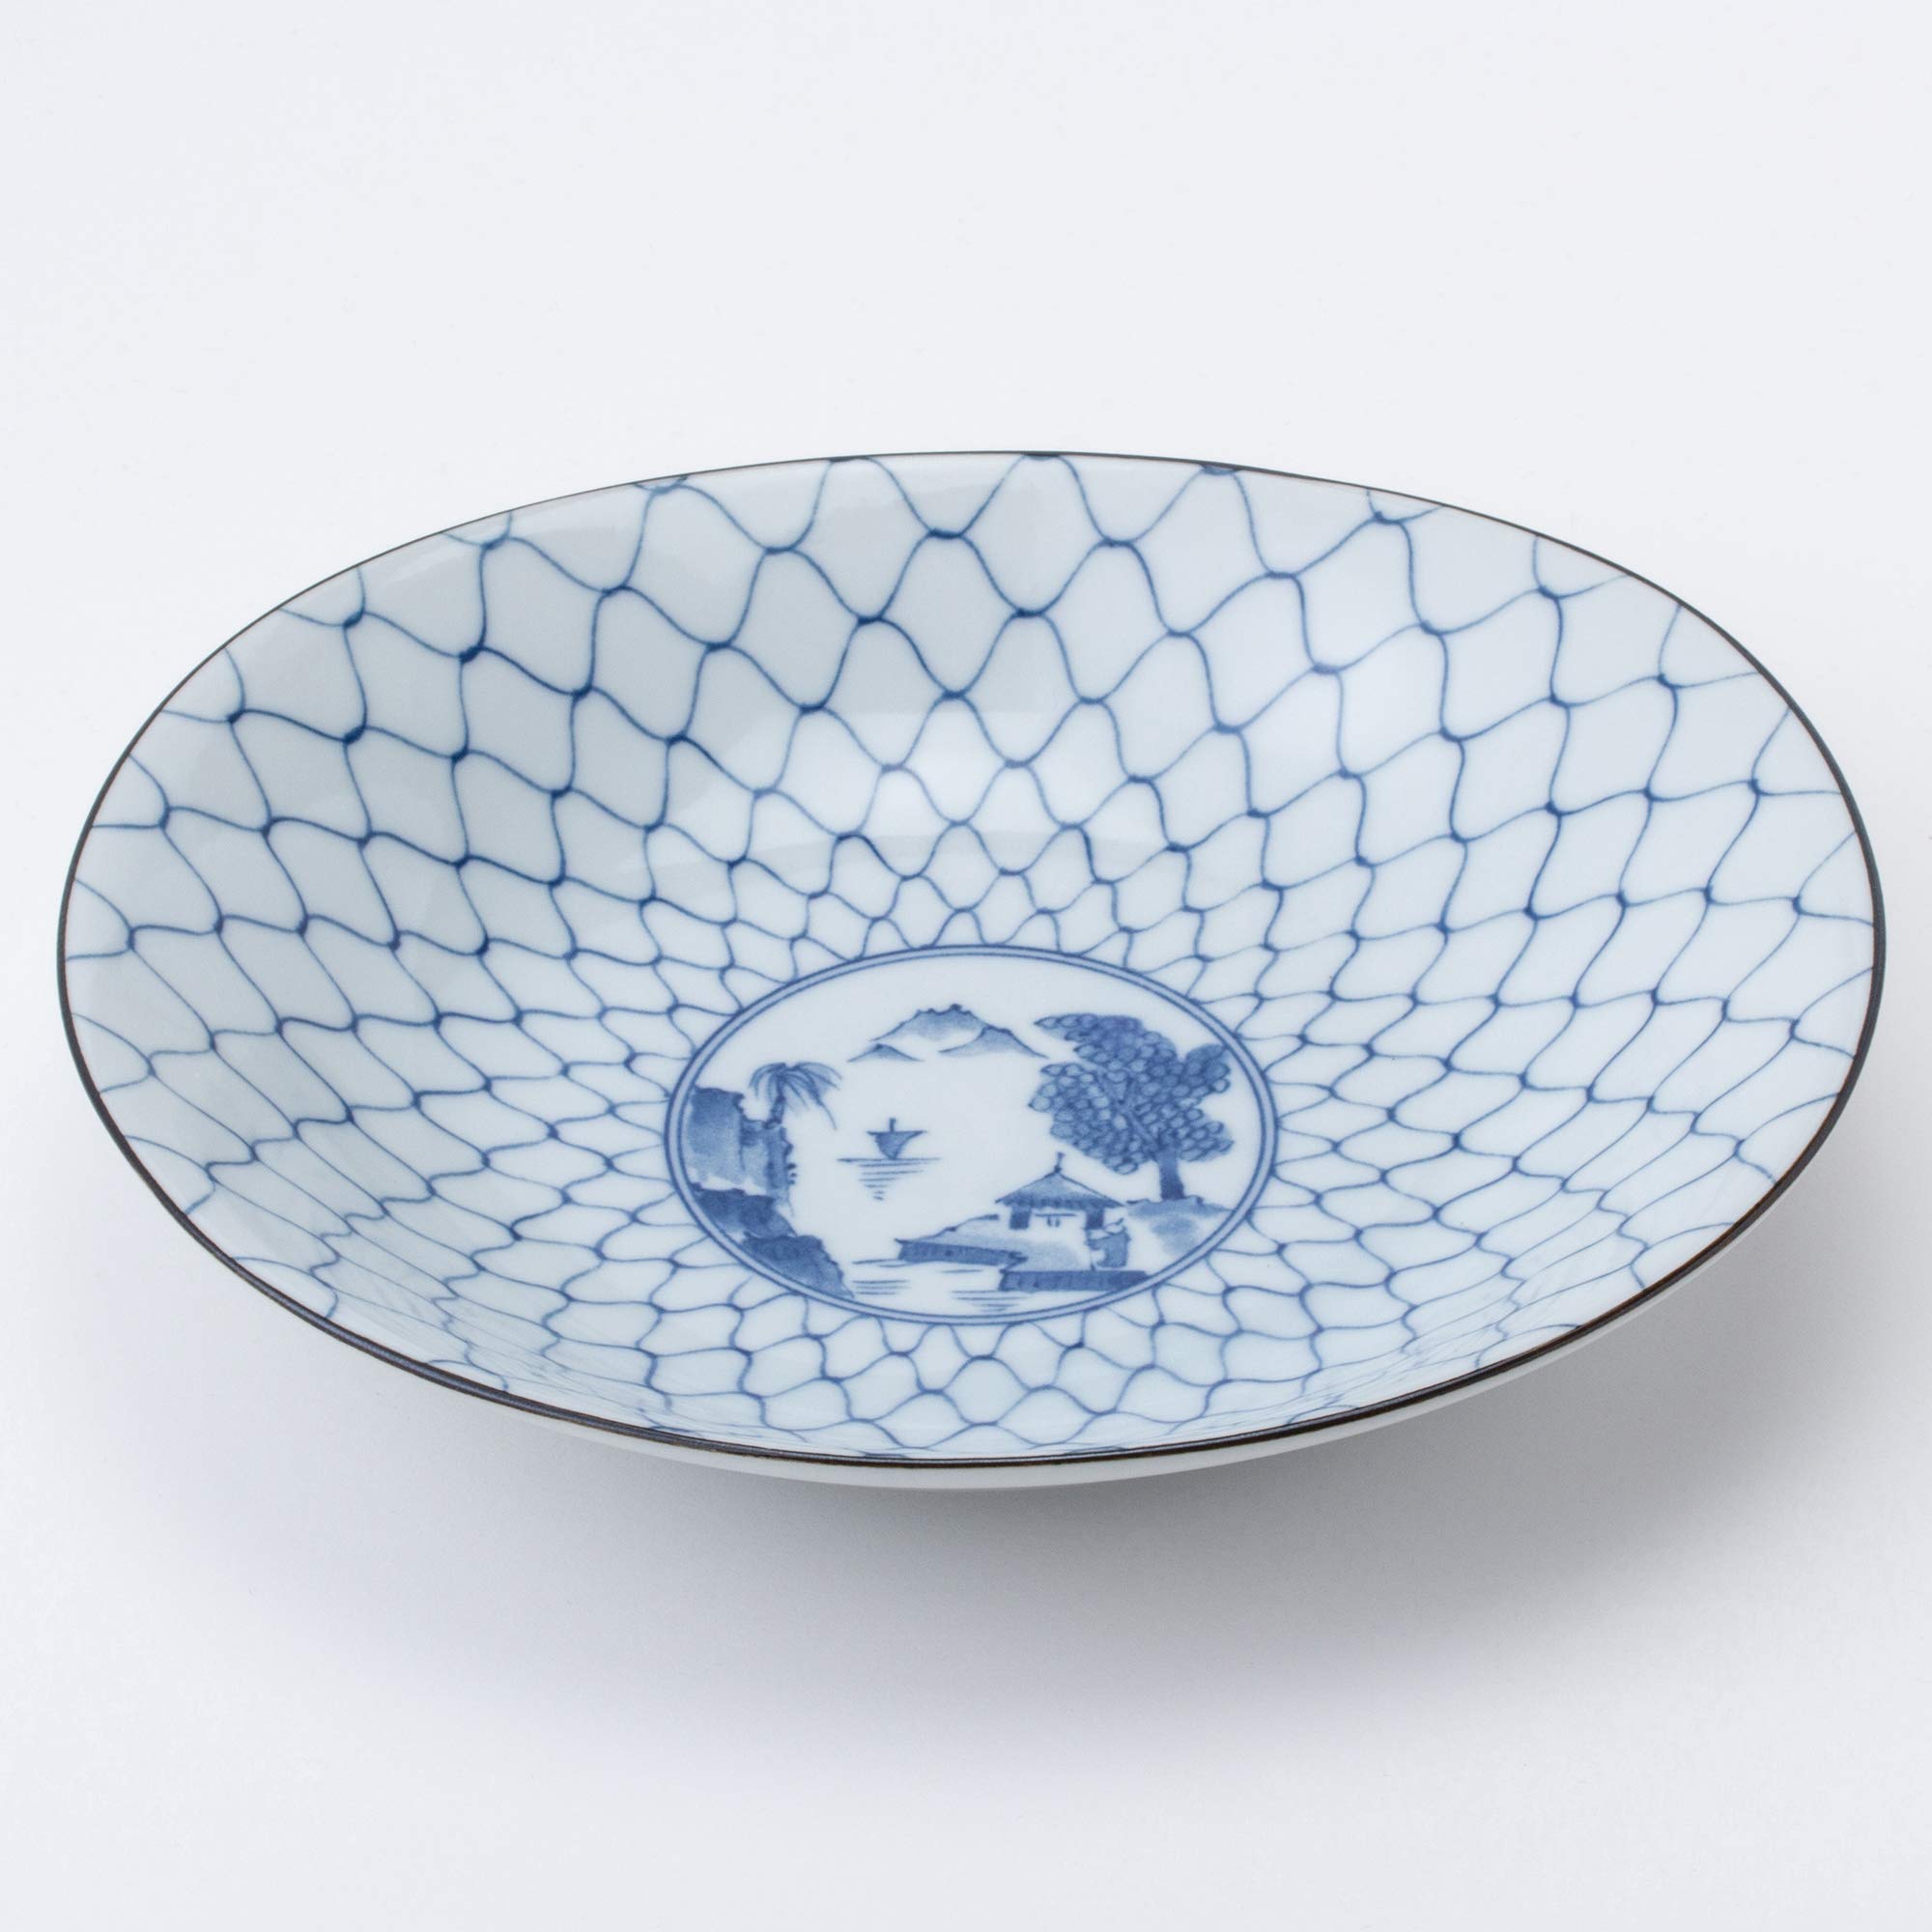 西海陶器(Saikaitoki) Saikai Pottery 31302 Oval Anti-Potted Indigo, Pictorial Changing, Presentation Box, Made in Japan, 8.7 x 7.9 inches (22 x 20 cm), Set of 5